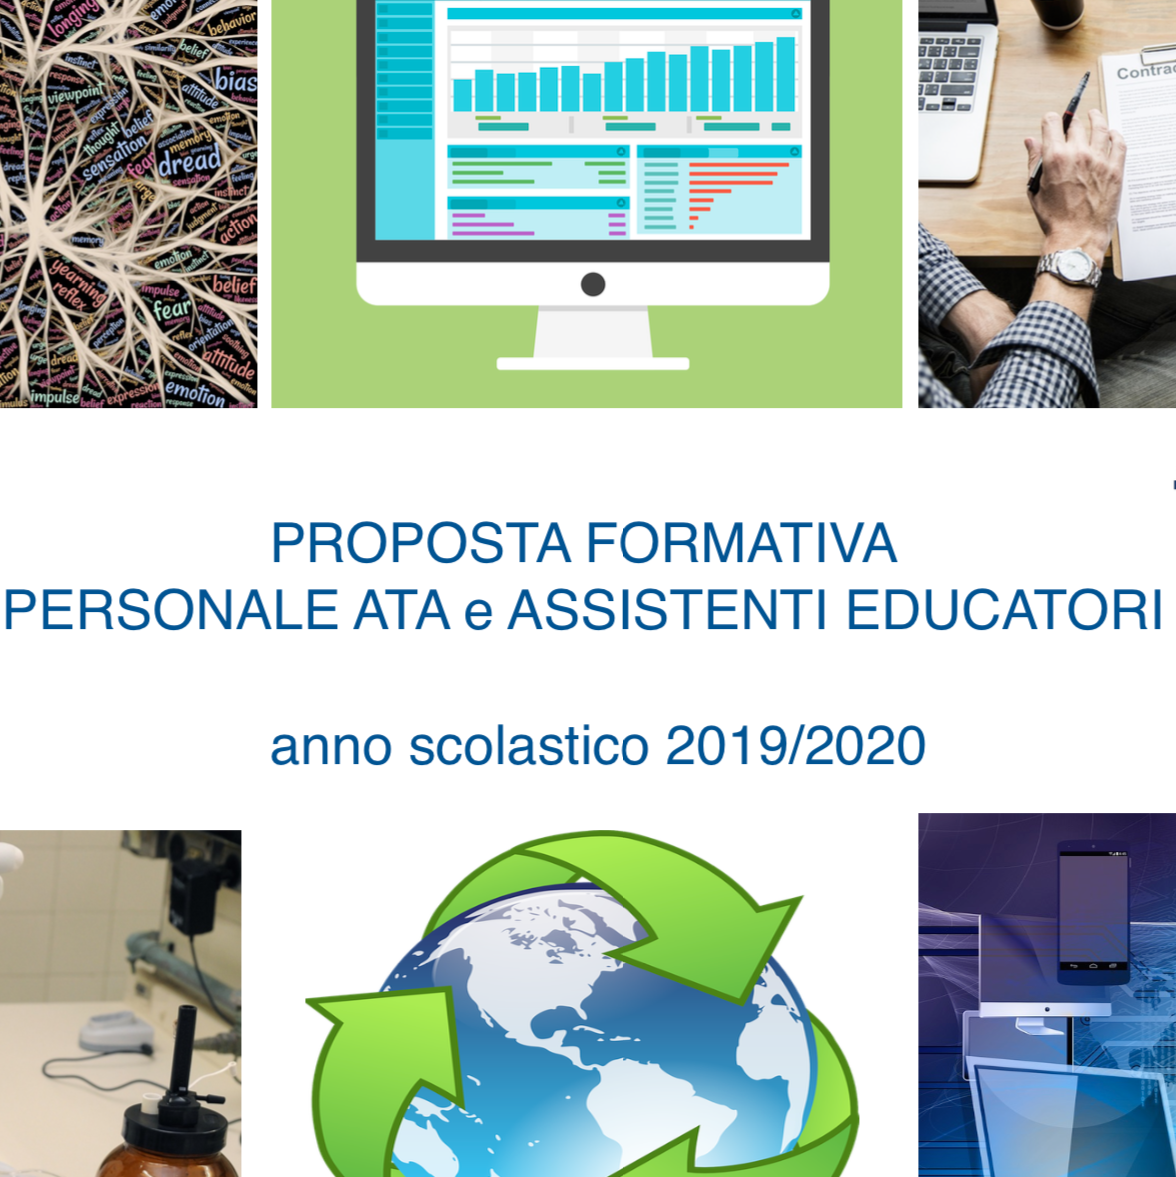 Proposta formativa personale ATA e Assistenti Educatori a.s. 2019/20